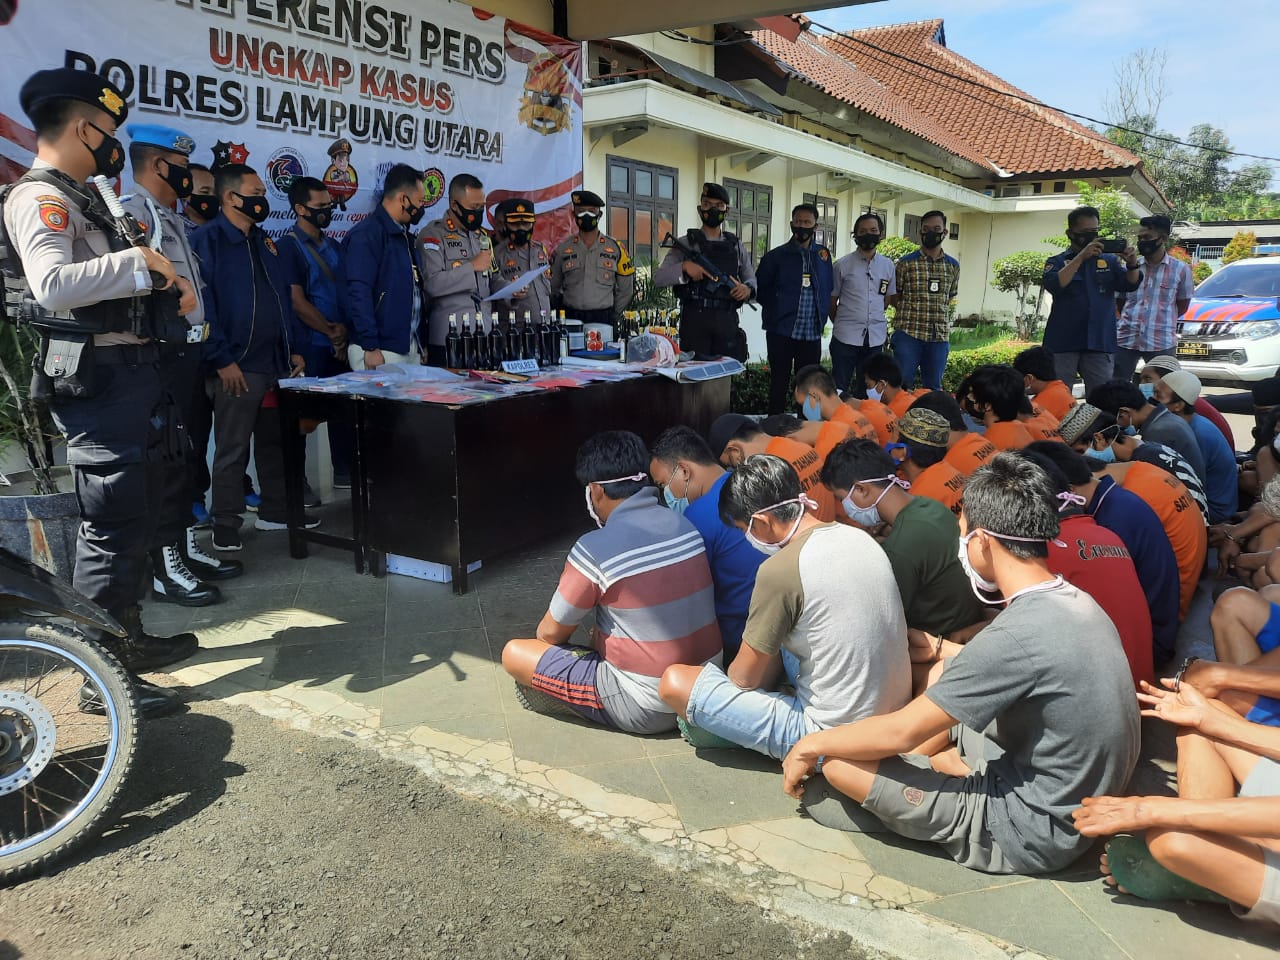 Polres Lampung Utara Berhasil Ungkap 50 Kasus Kejahatan Dengan Mengamankan Pelaku 52 Orang